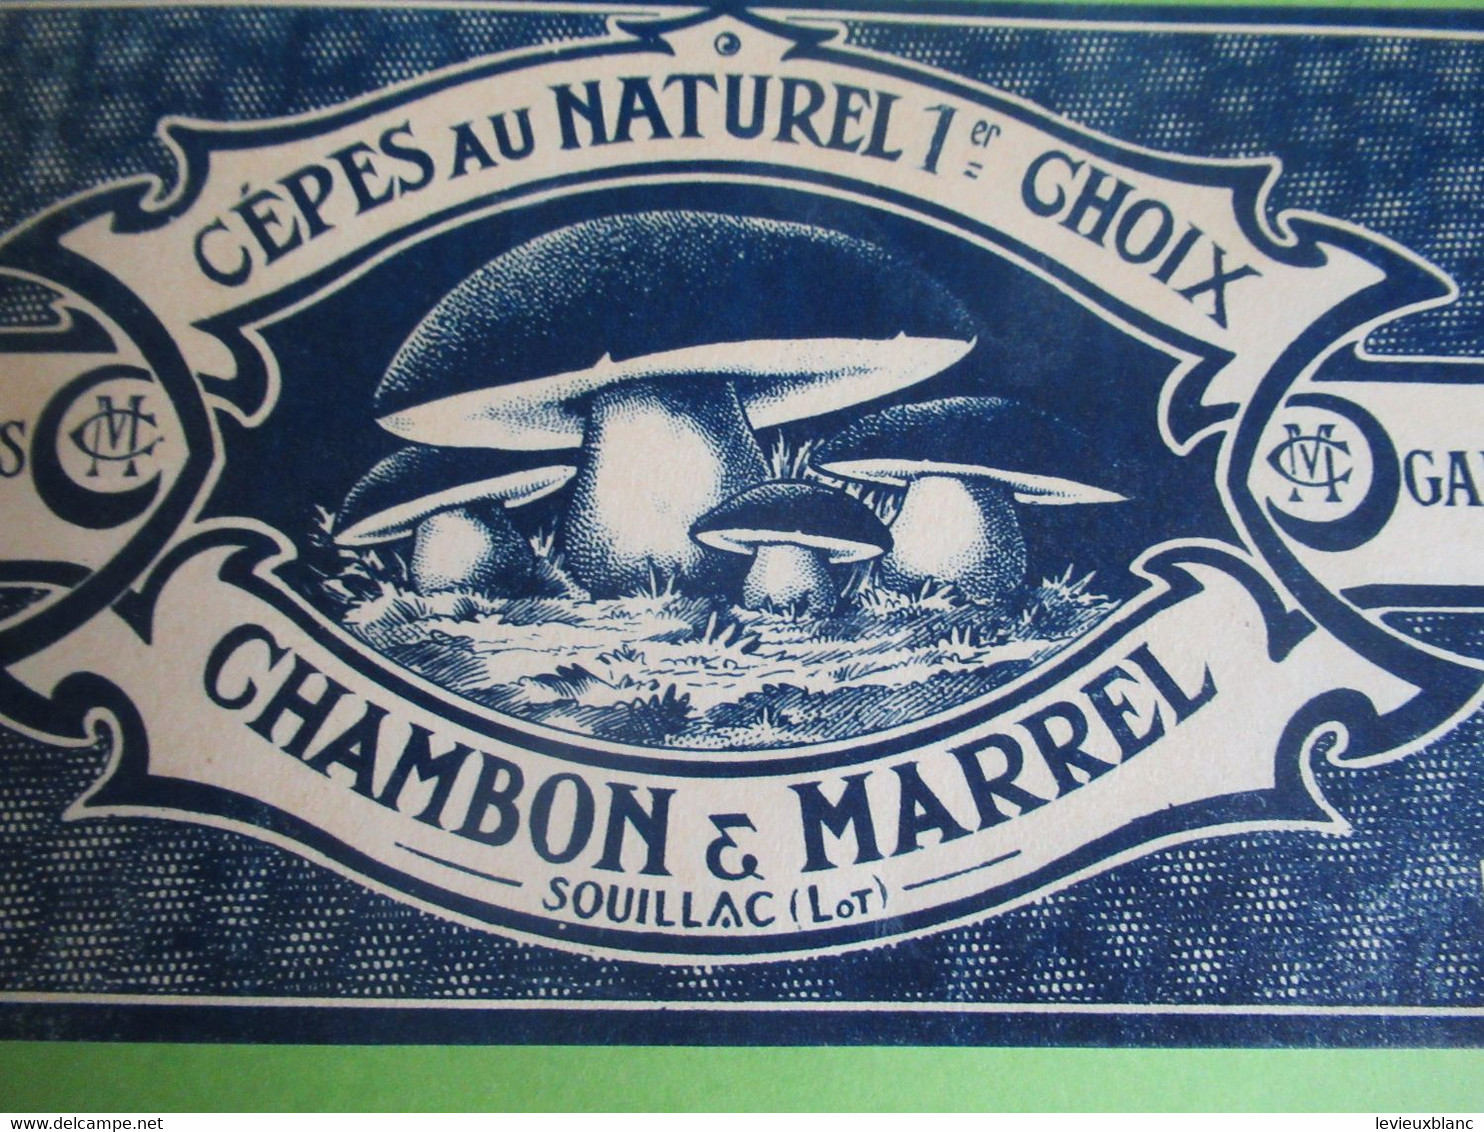 Etiquette Conserve/Cèpes Au Naturel 1er Choix/CHAMBON & MARREL/SOUILLAC ( Lot ) / Début XX                  ETIQ182 - Fruits Et Légumes